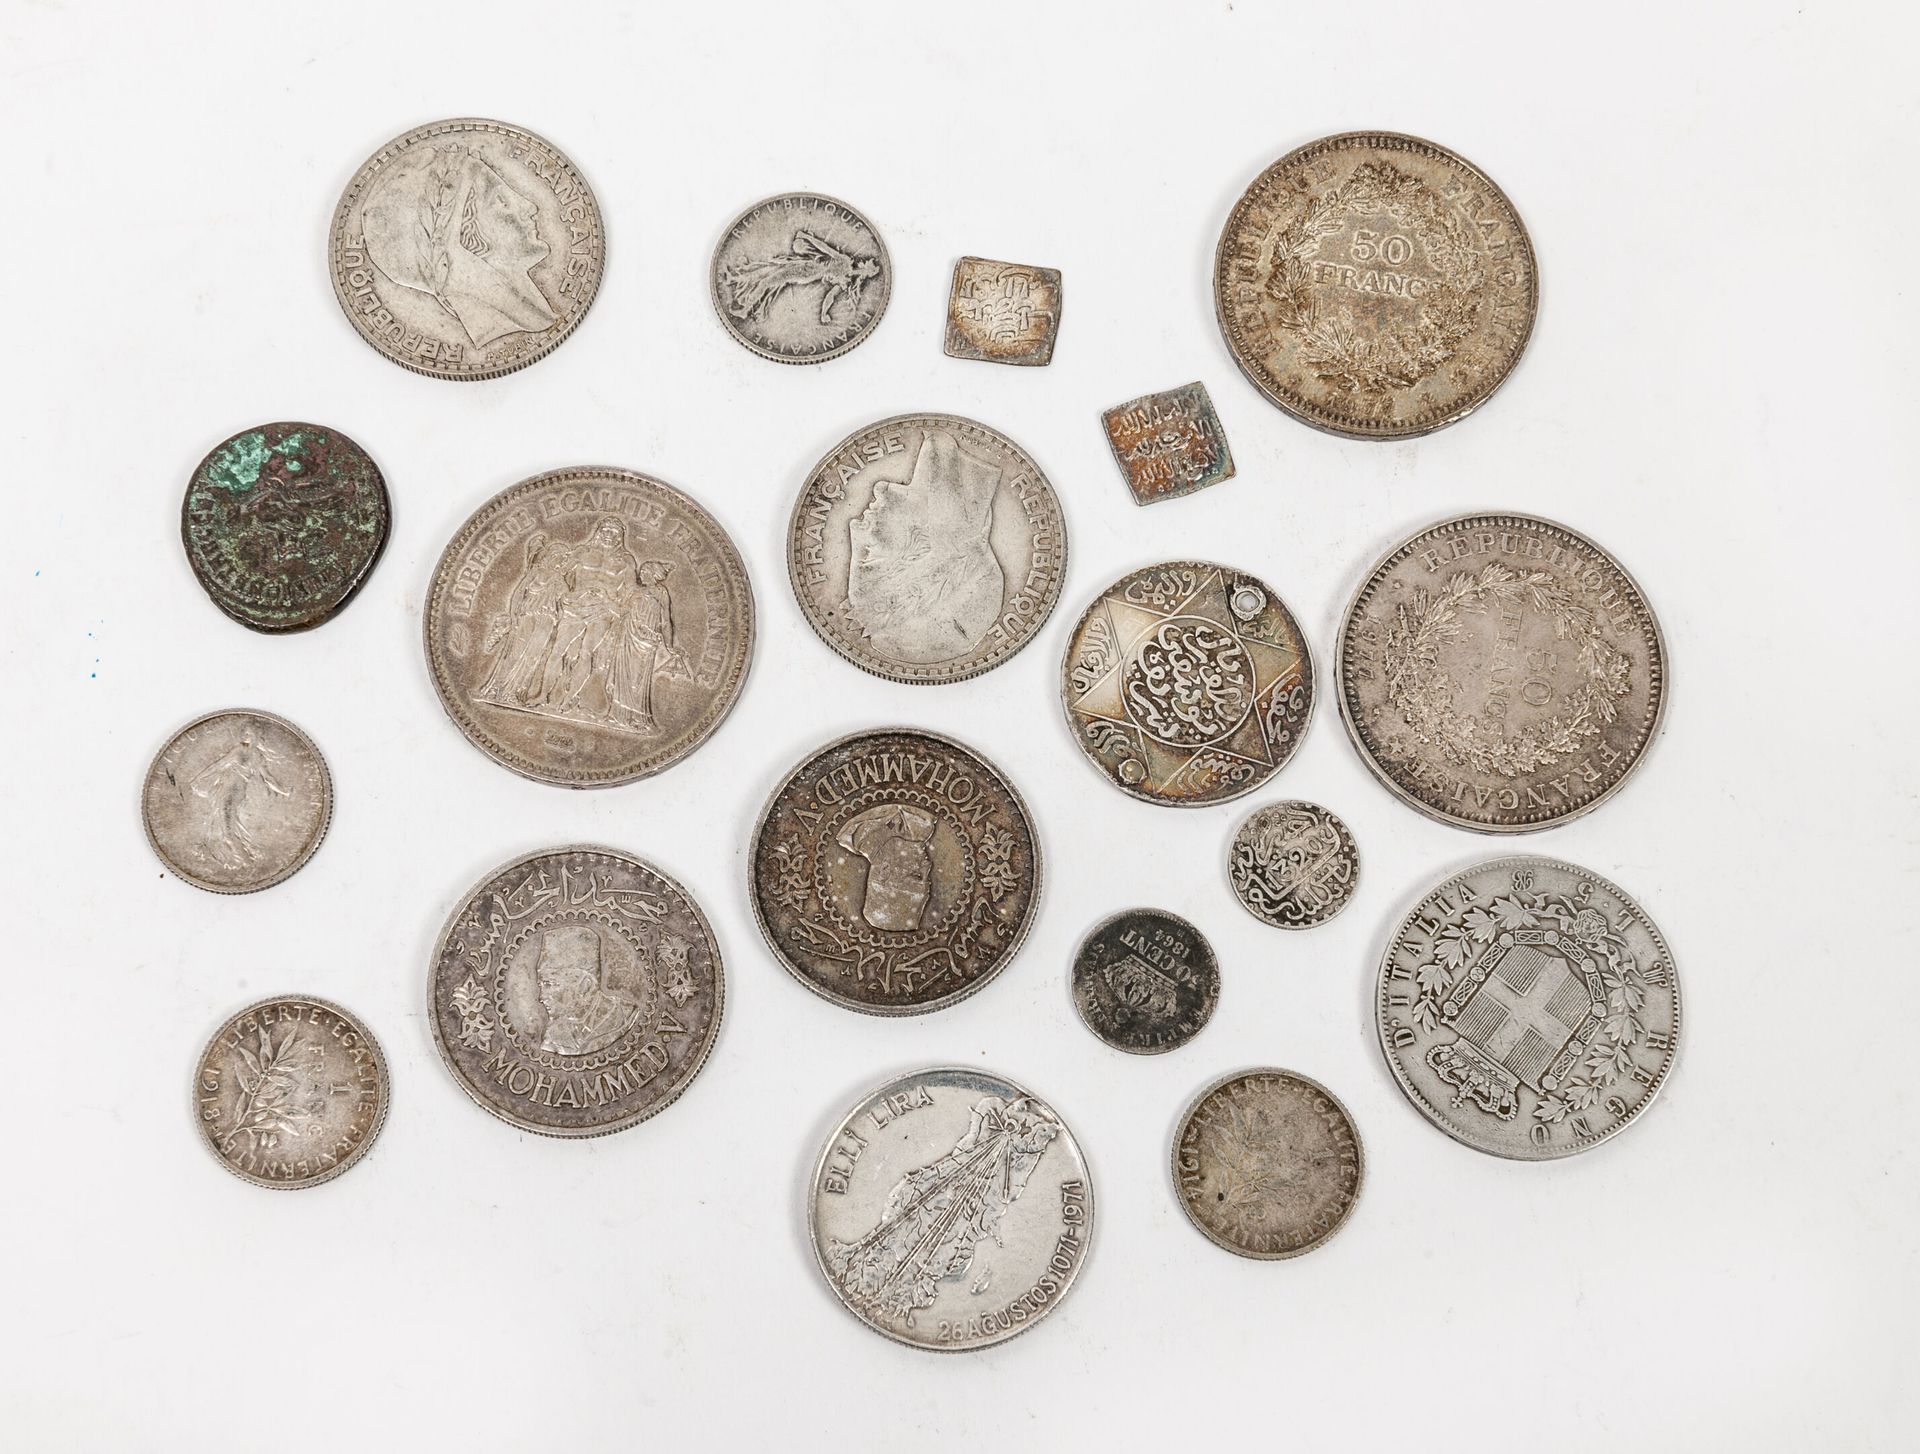 FRANCE et divers, XIXème siècle Lot of 18 silver coins, including :

- 10 French&hellip;